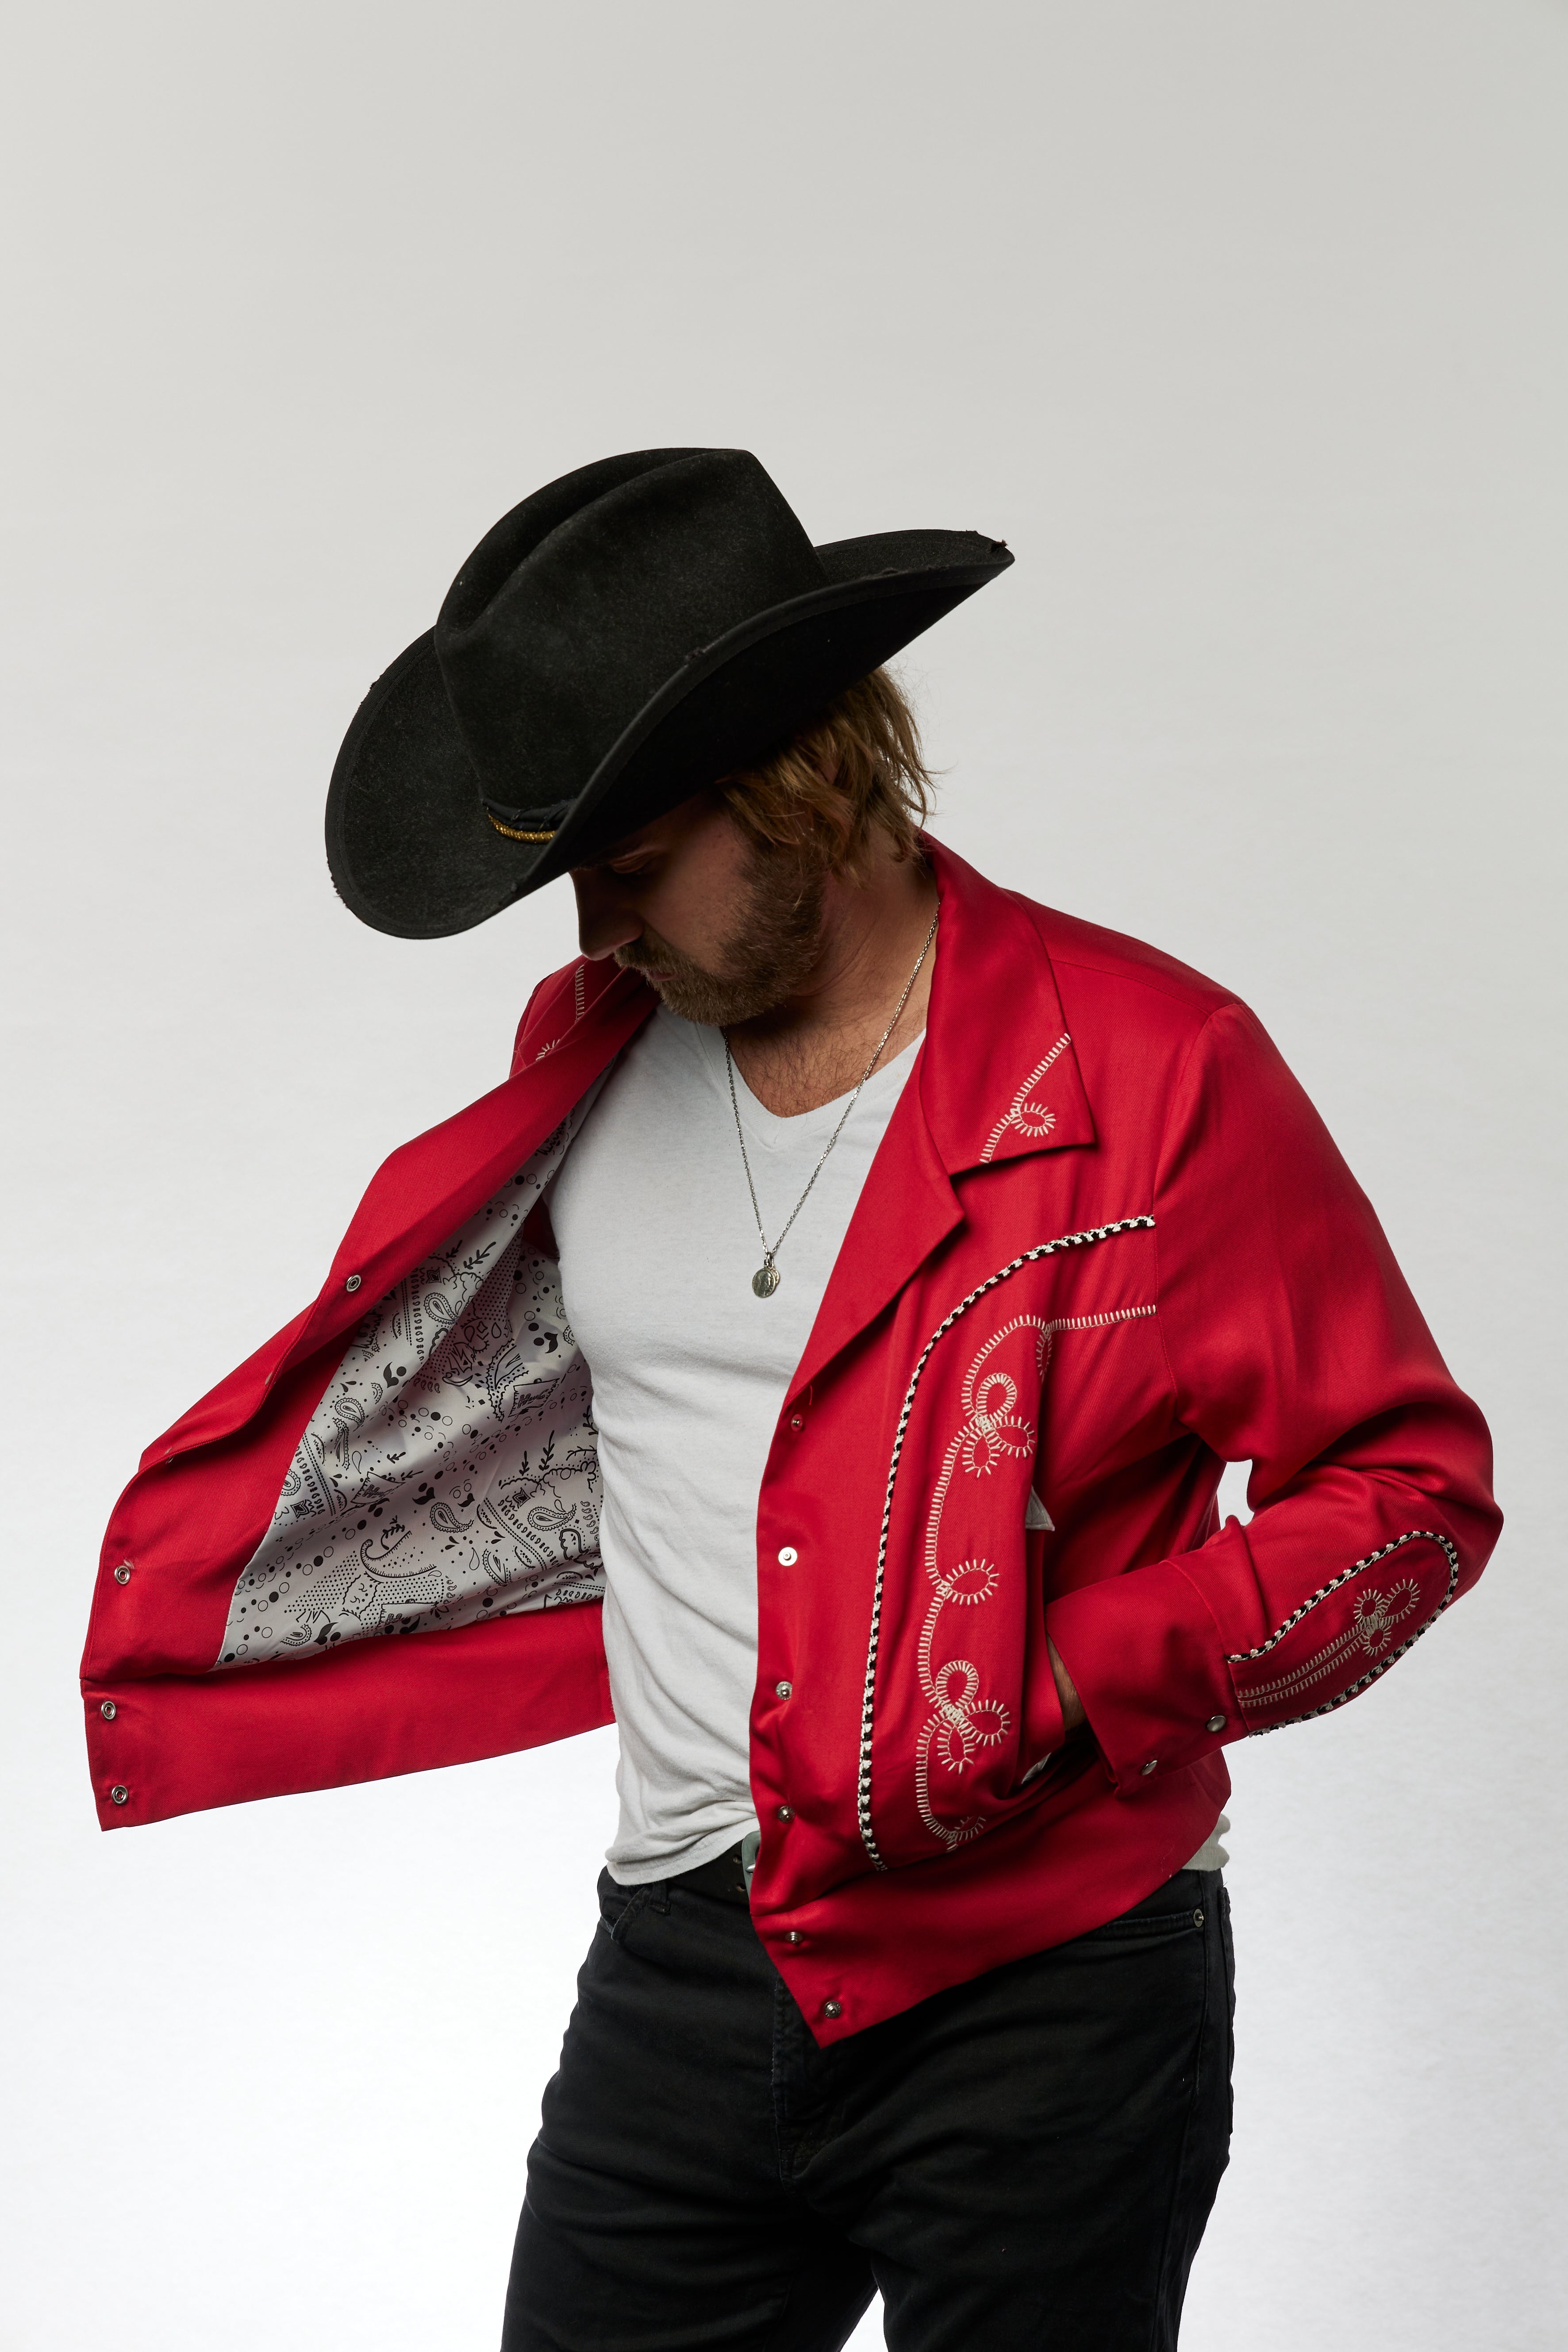 Ricky Nell | Jackets & Coats | Ricky Nell Bolero Style Western Rodeo Jacket  Yellowstone Leather | Poshmark